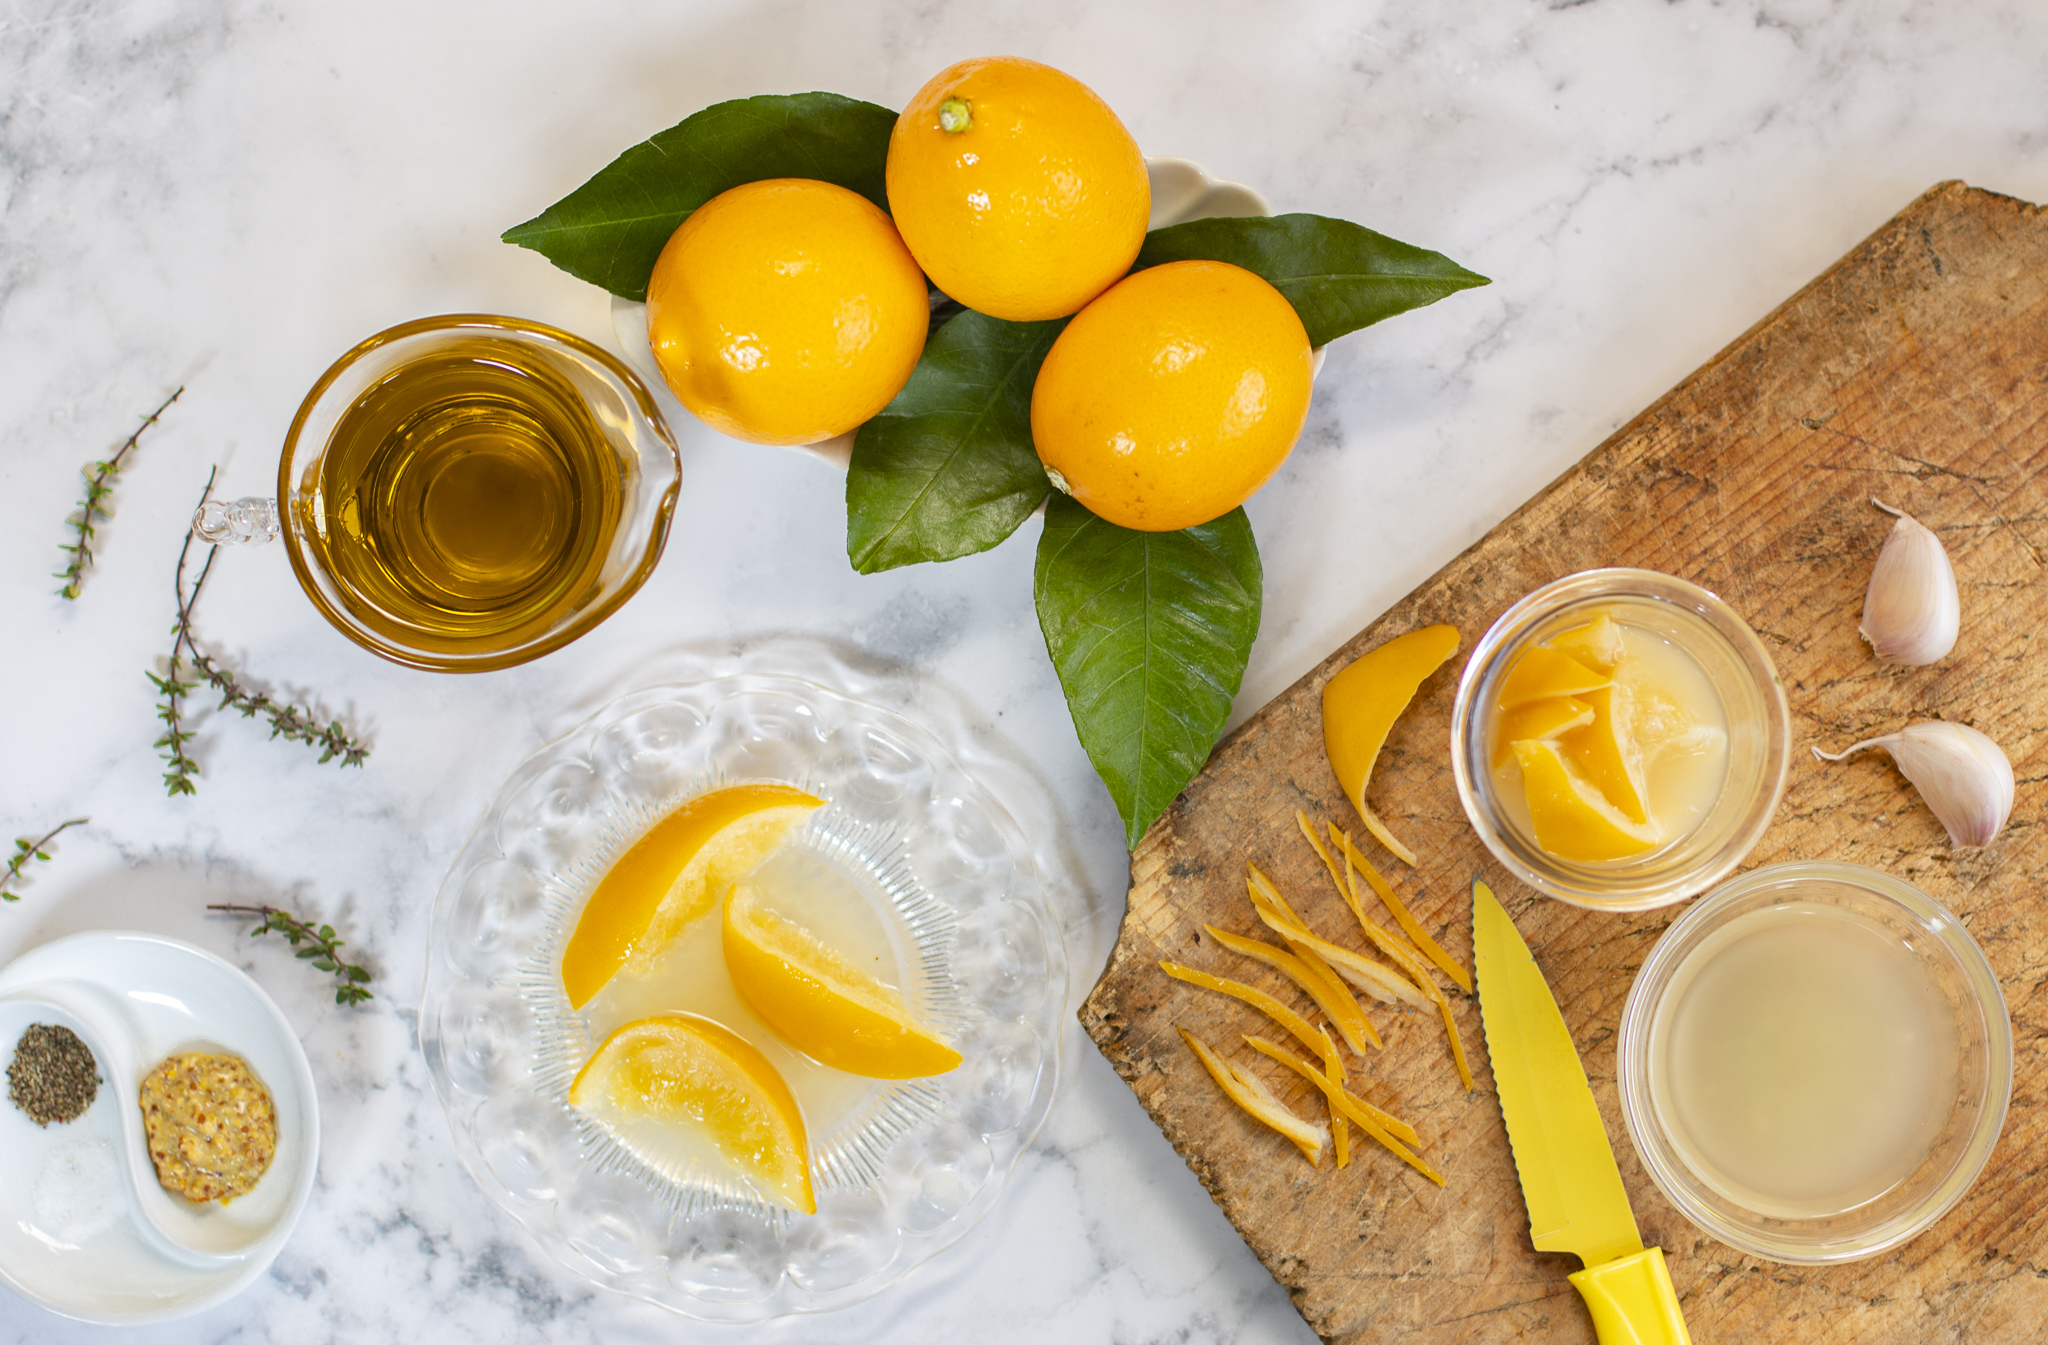 Ingredients for Preserved Lemon Vinaigrette on Marble